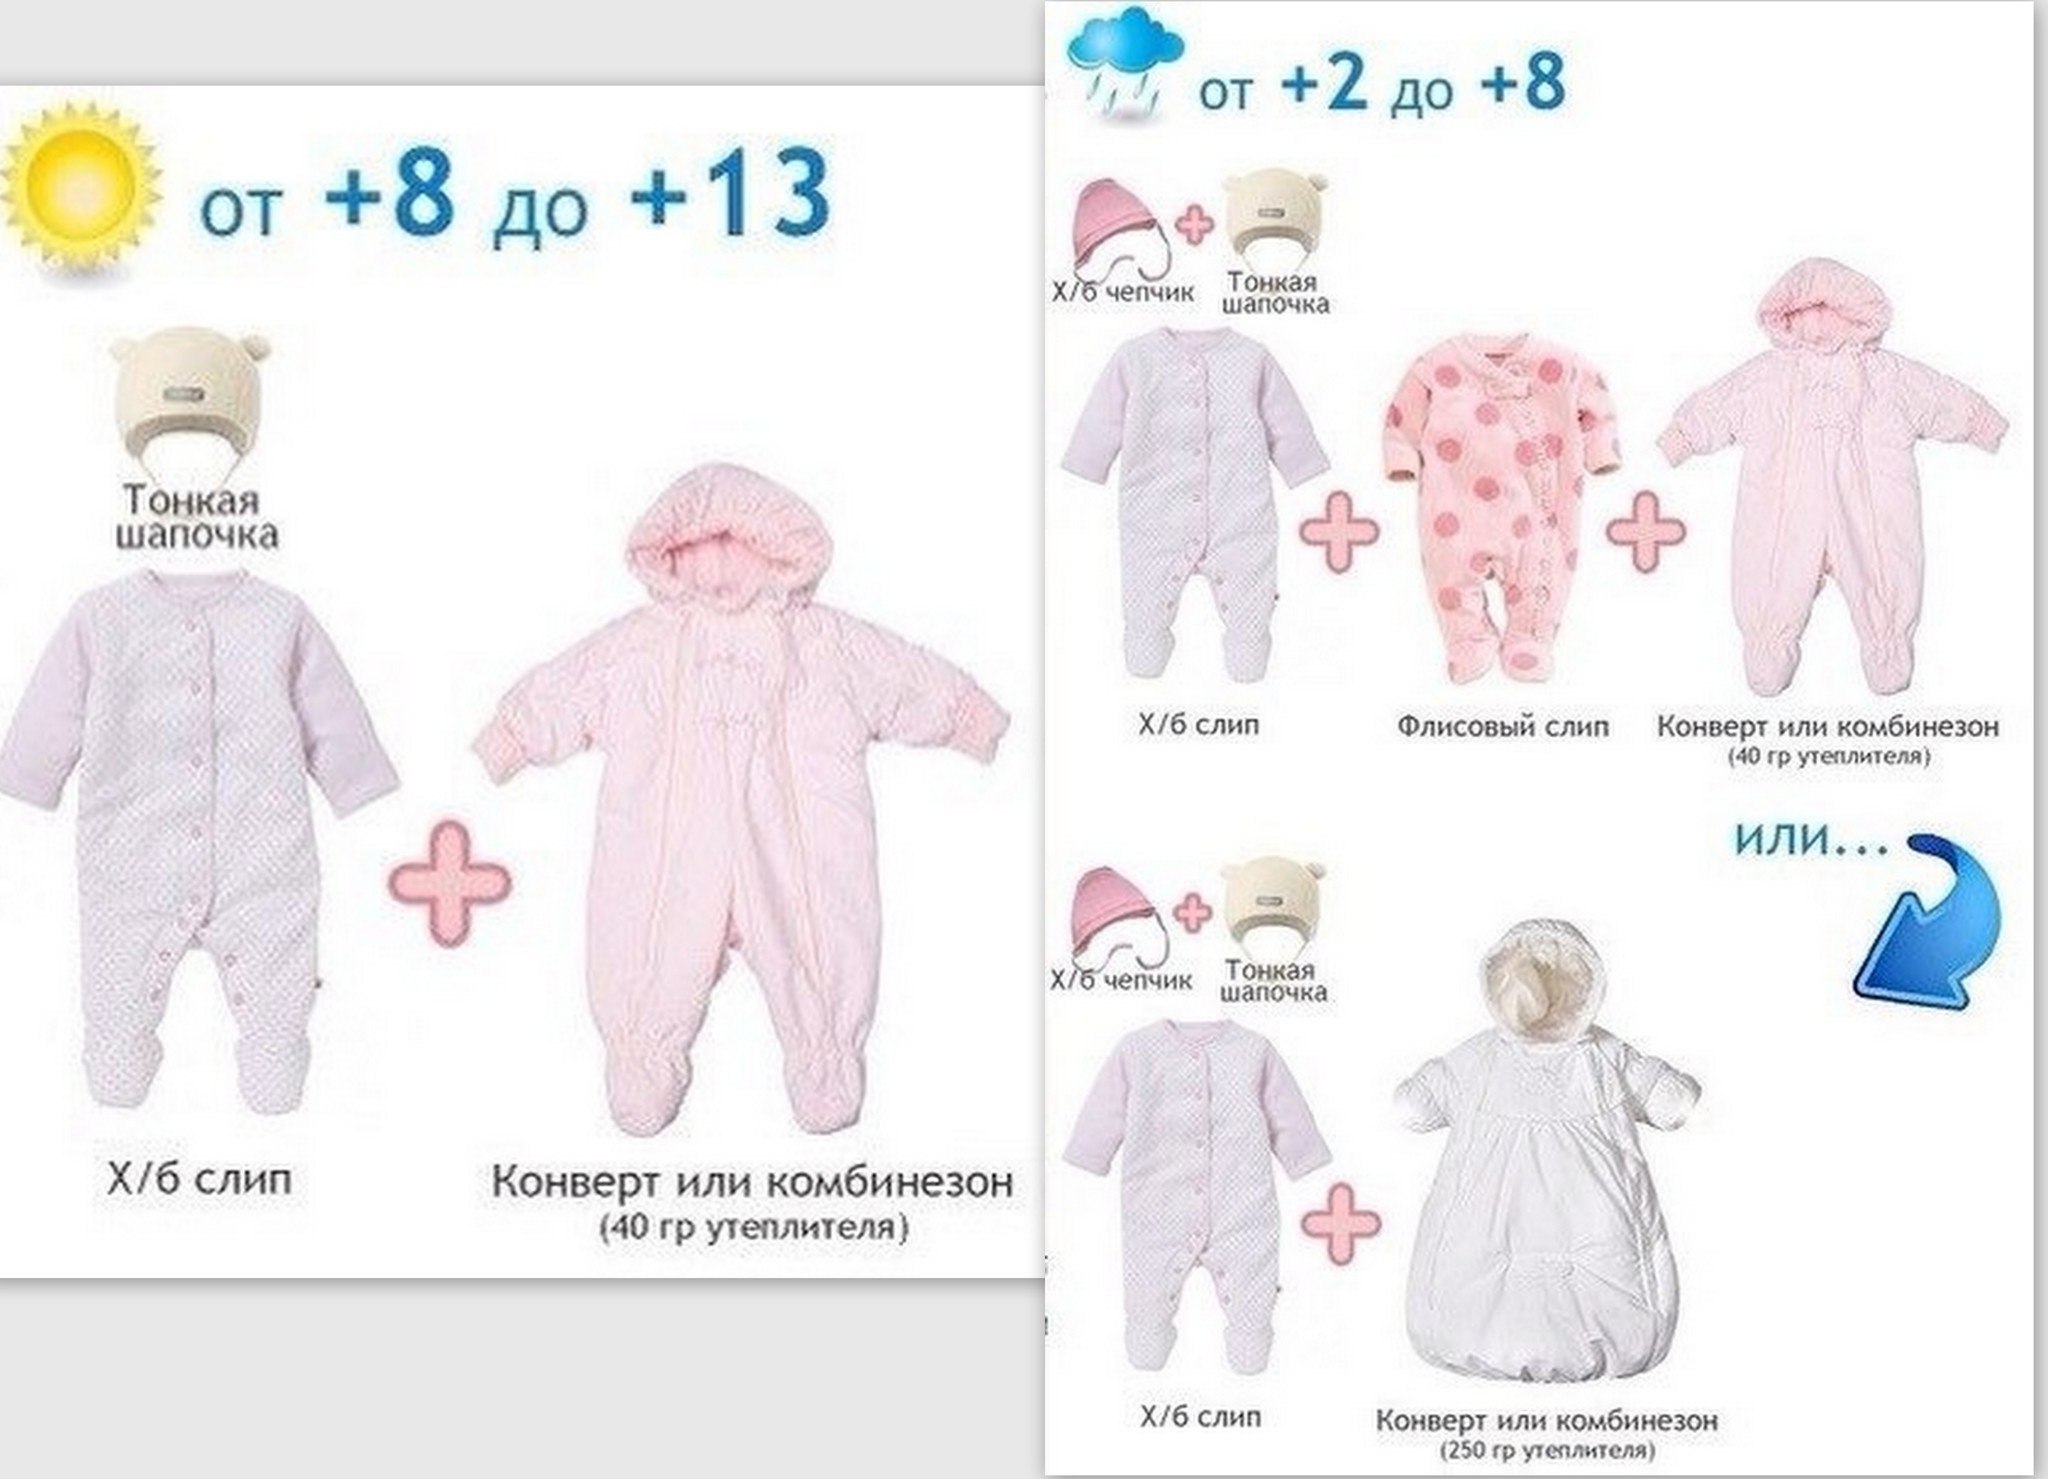 Как одеть ребенка в 12 весной. Как одеть грудничка в +10 +15. 8 Градусов как одеть грудничка. Как одеть ребенка. Одежда для новорожденных по градусам.